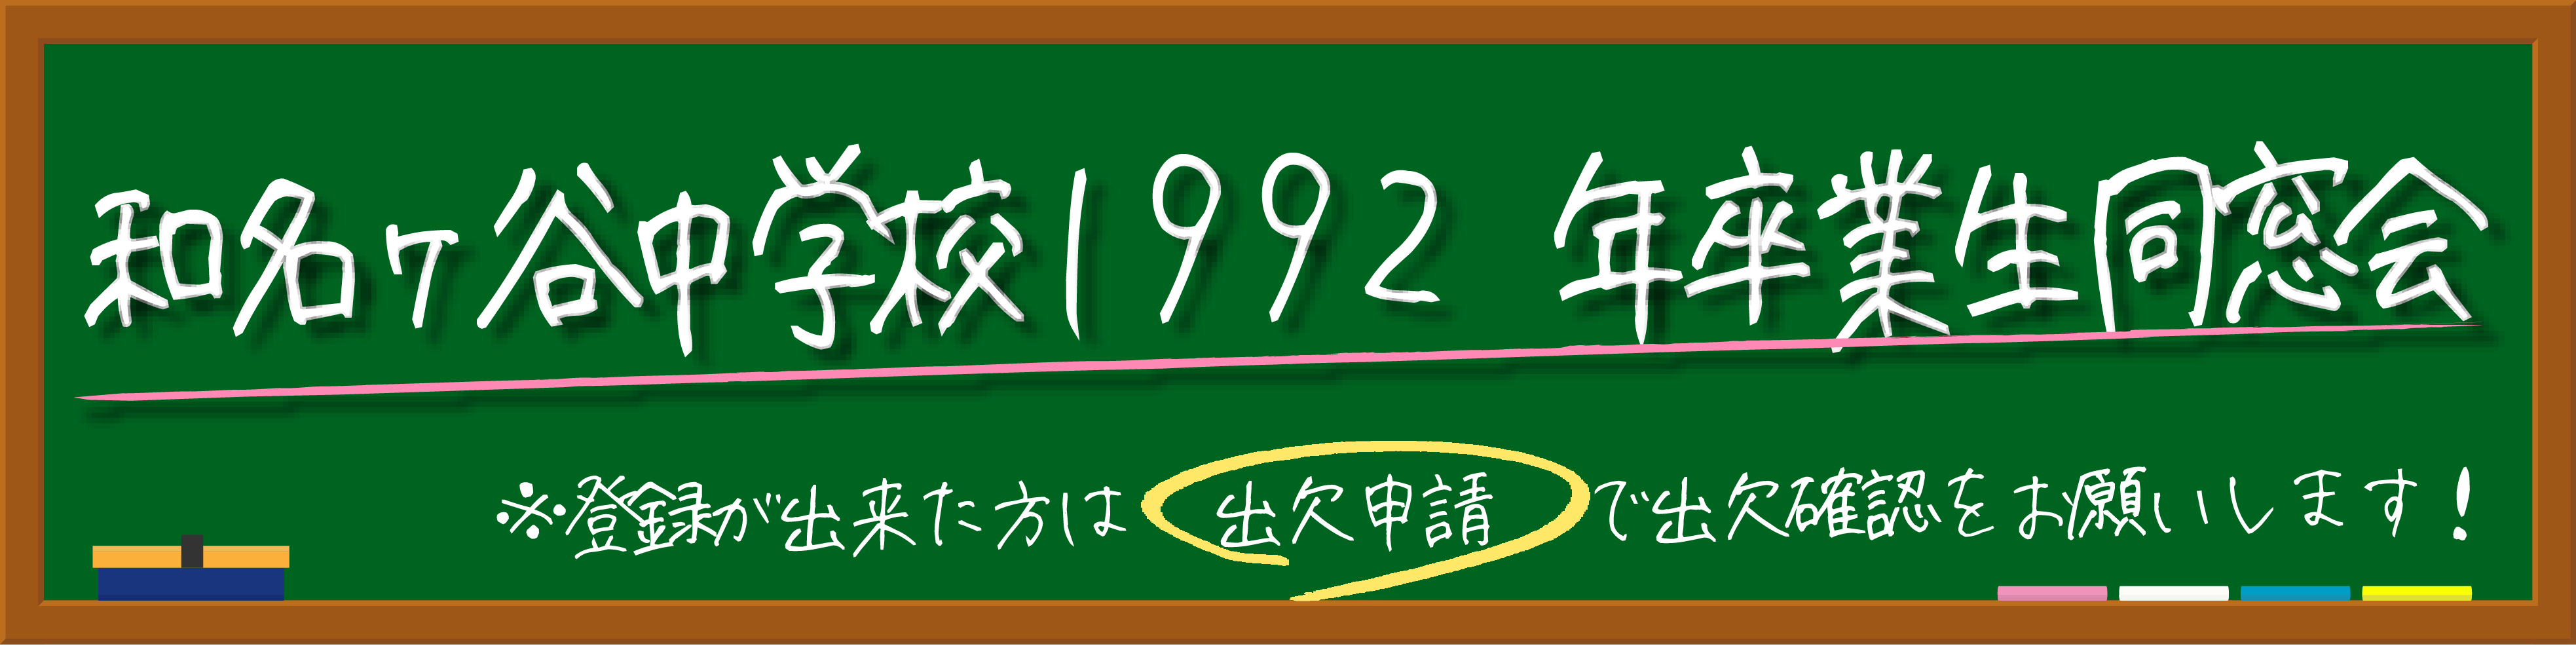 松戸市立和名ケ谷中学校1992年卒業生同窓会